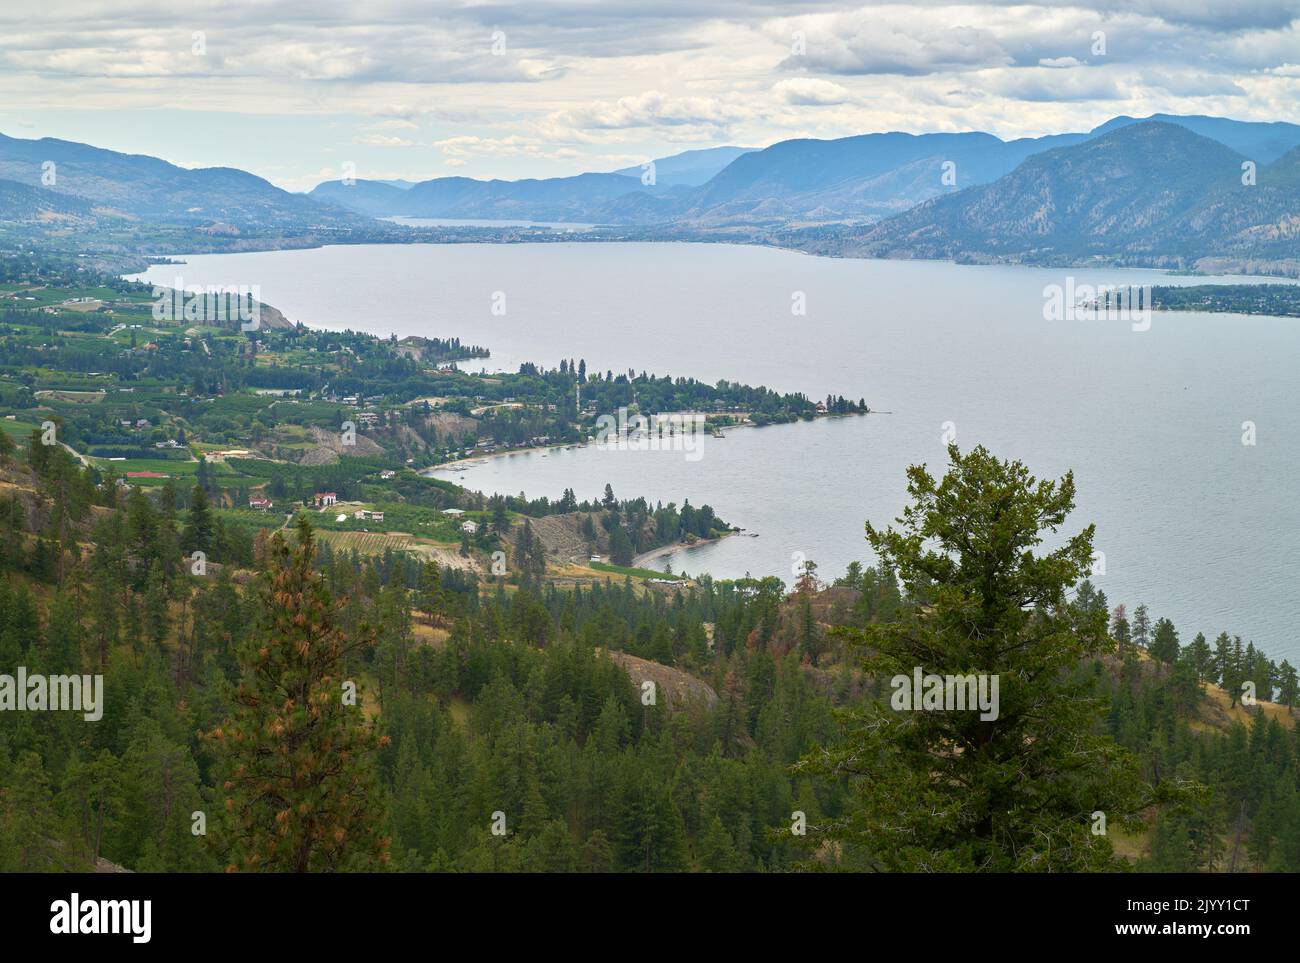 Naramata Hillside and Okanagan Lake Overview. The forest and hills above the Naramata vineyards and Okanagan Lake, British Columbia, Canada. Stock Photo